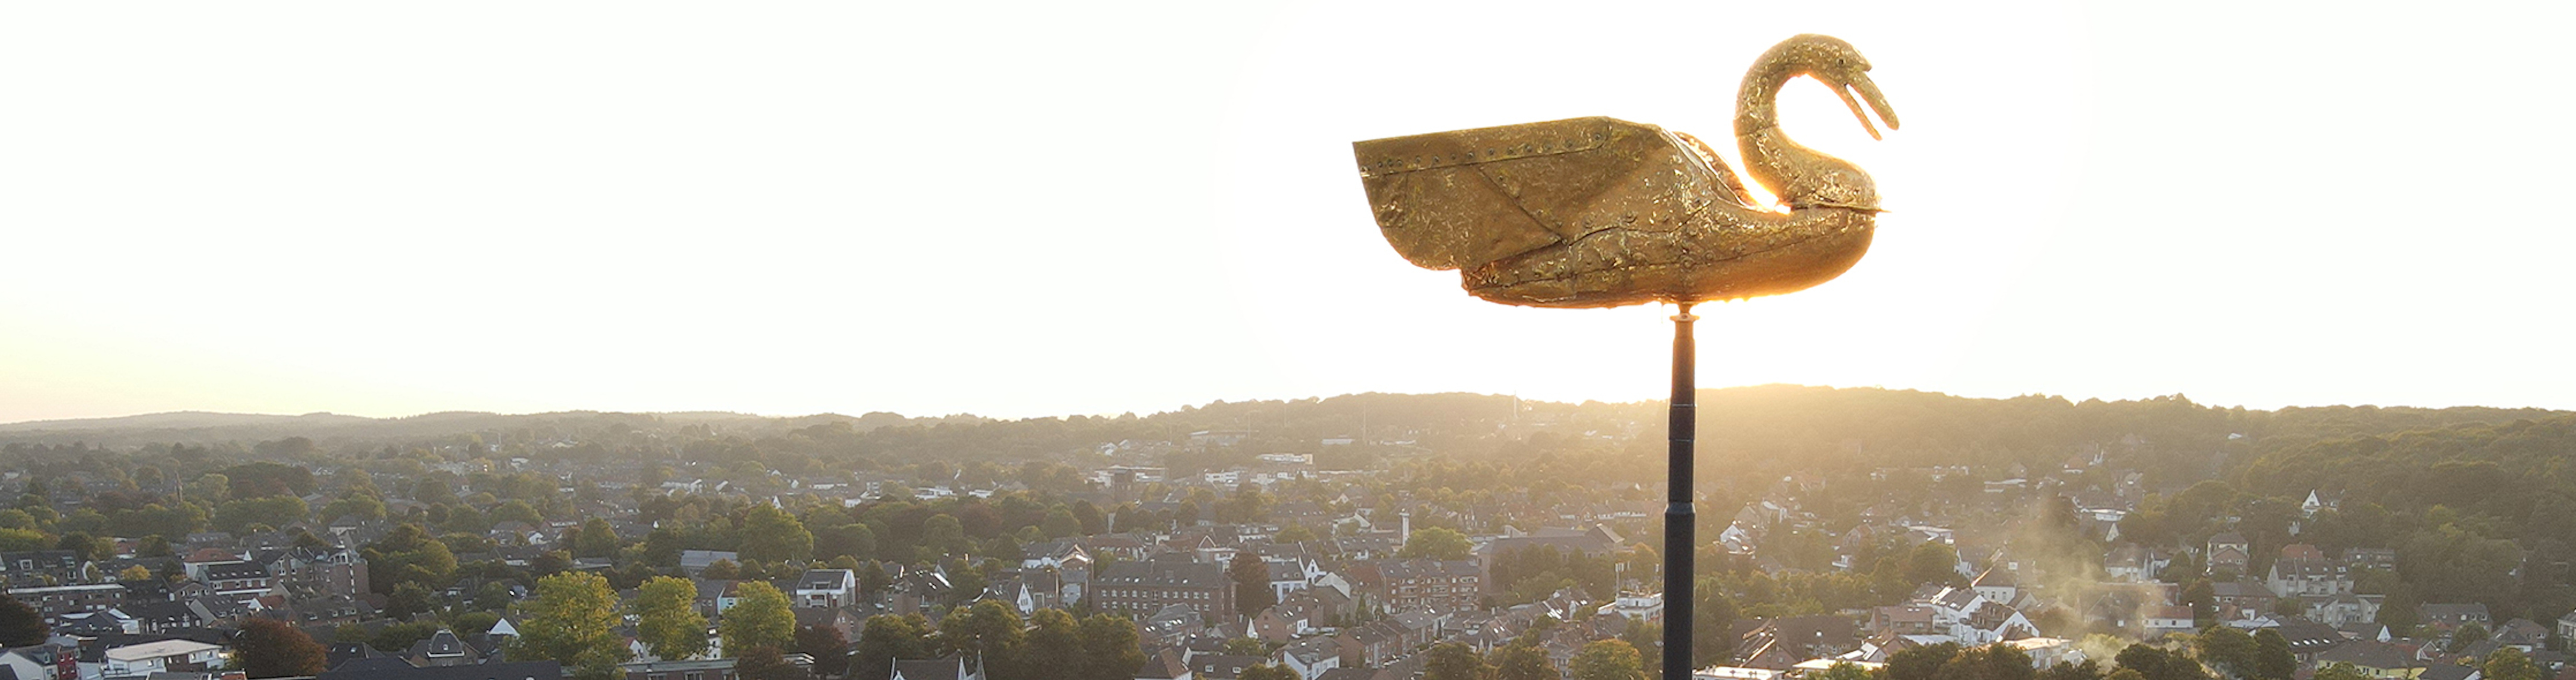 Drohnenaufnahme vom goldenen Schwan auf der Schwanenburg bei Sonnenuntergang